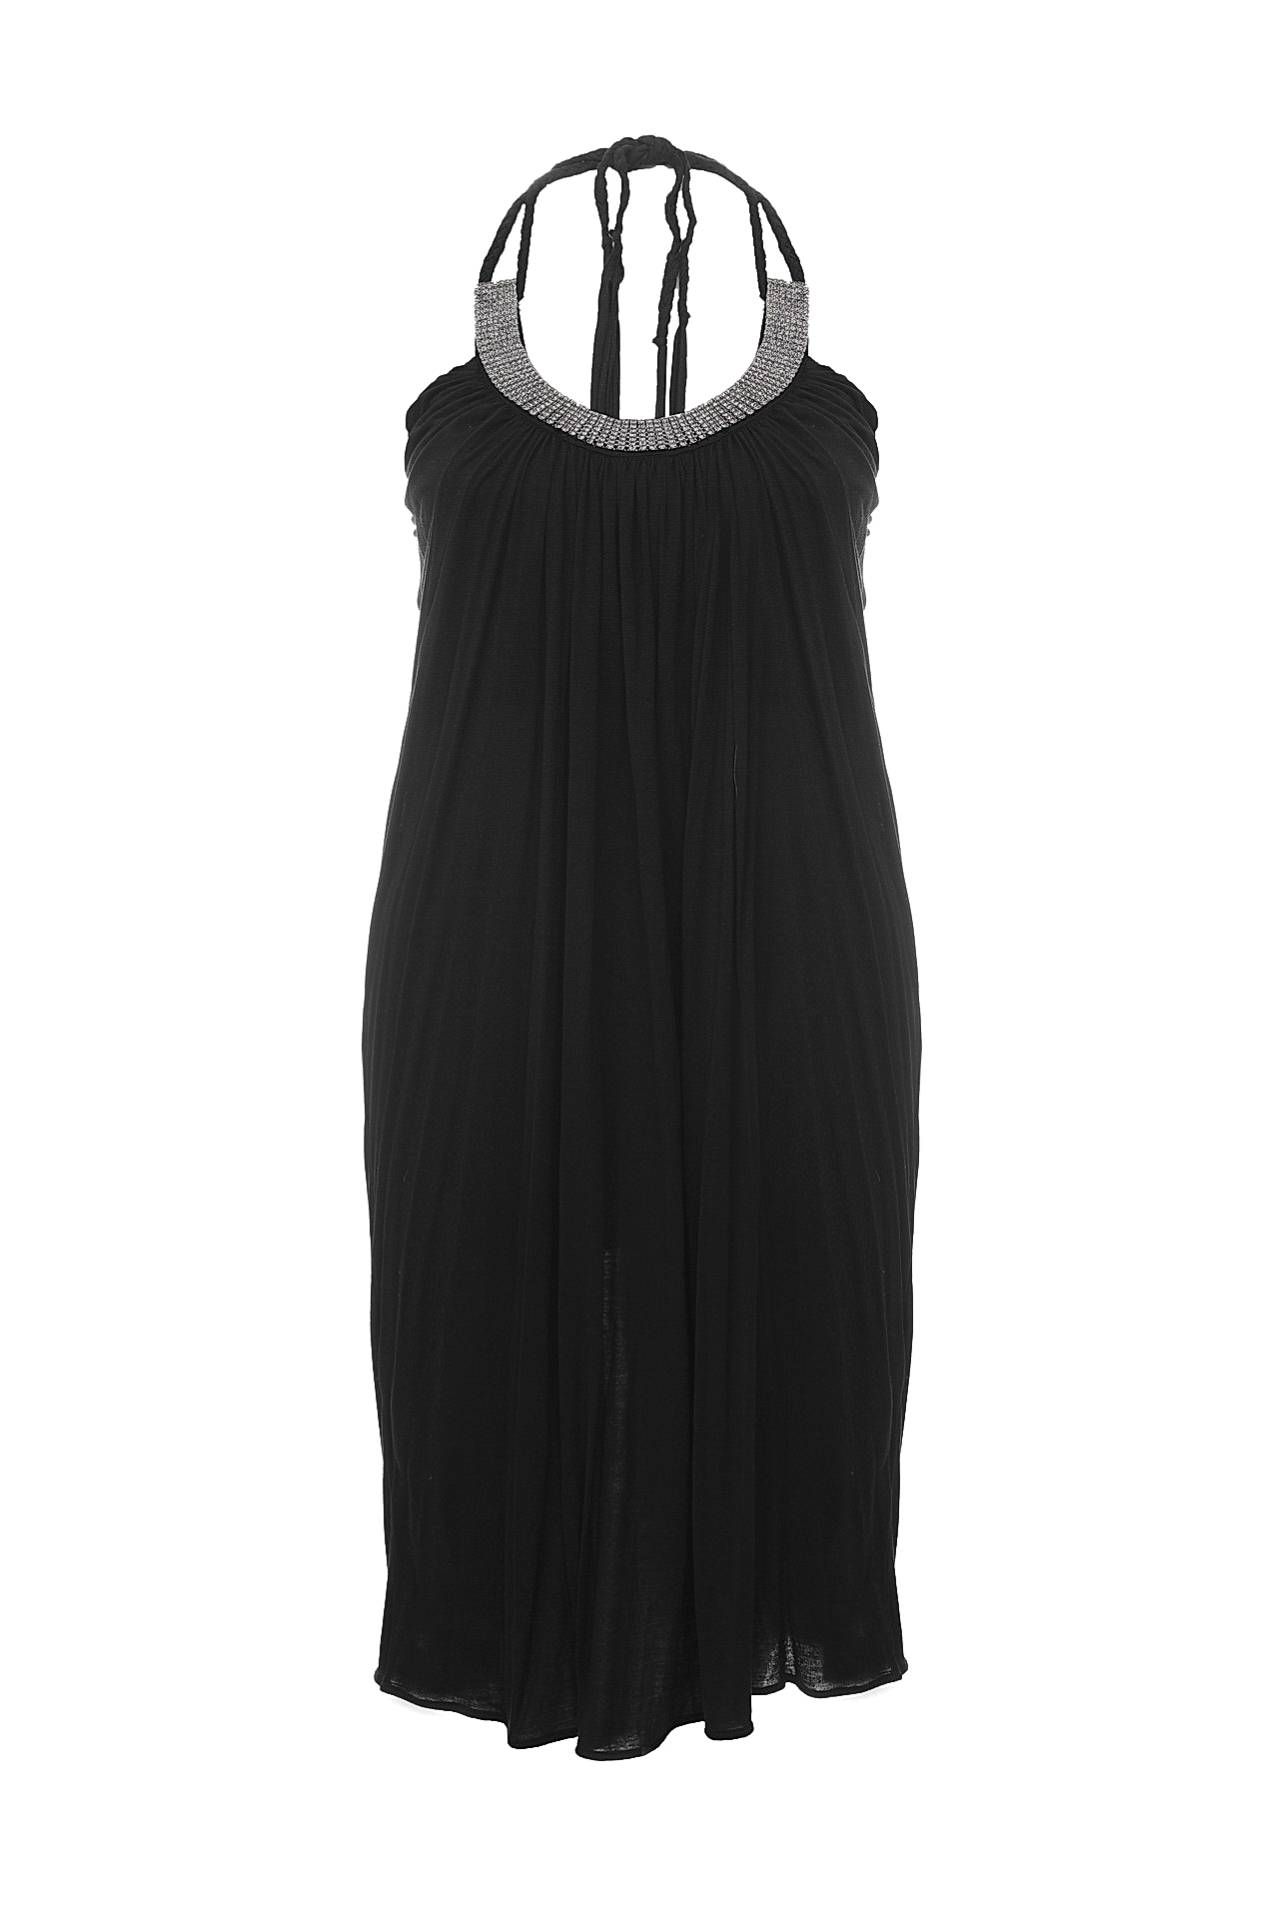 Одежда женская Платье STAR CHIC (SC289/11.1). Купить за 5960 руб.